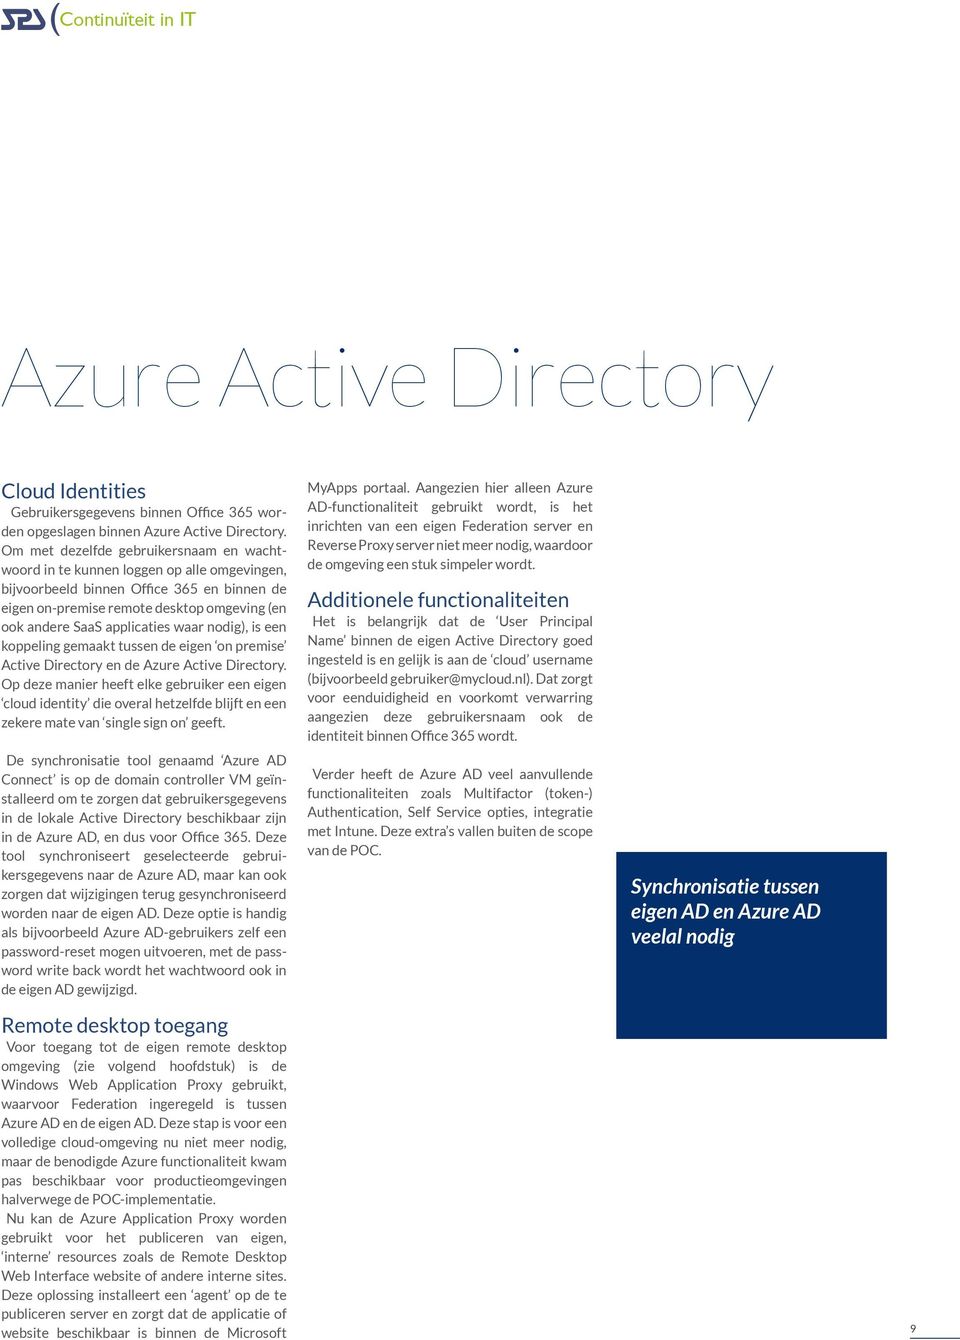 applicaties waar nodig), is een koppeling gemaakt tussen de eigen on premise Active Directory en de Azure Active Directory.